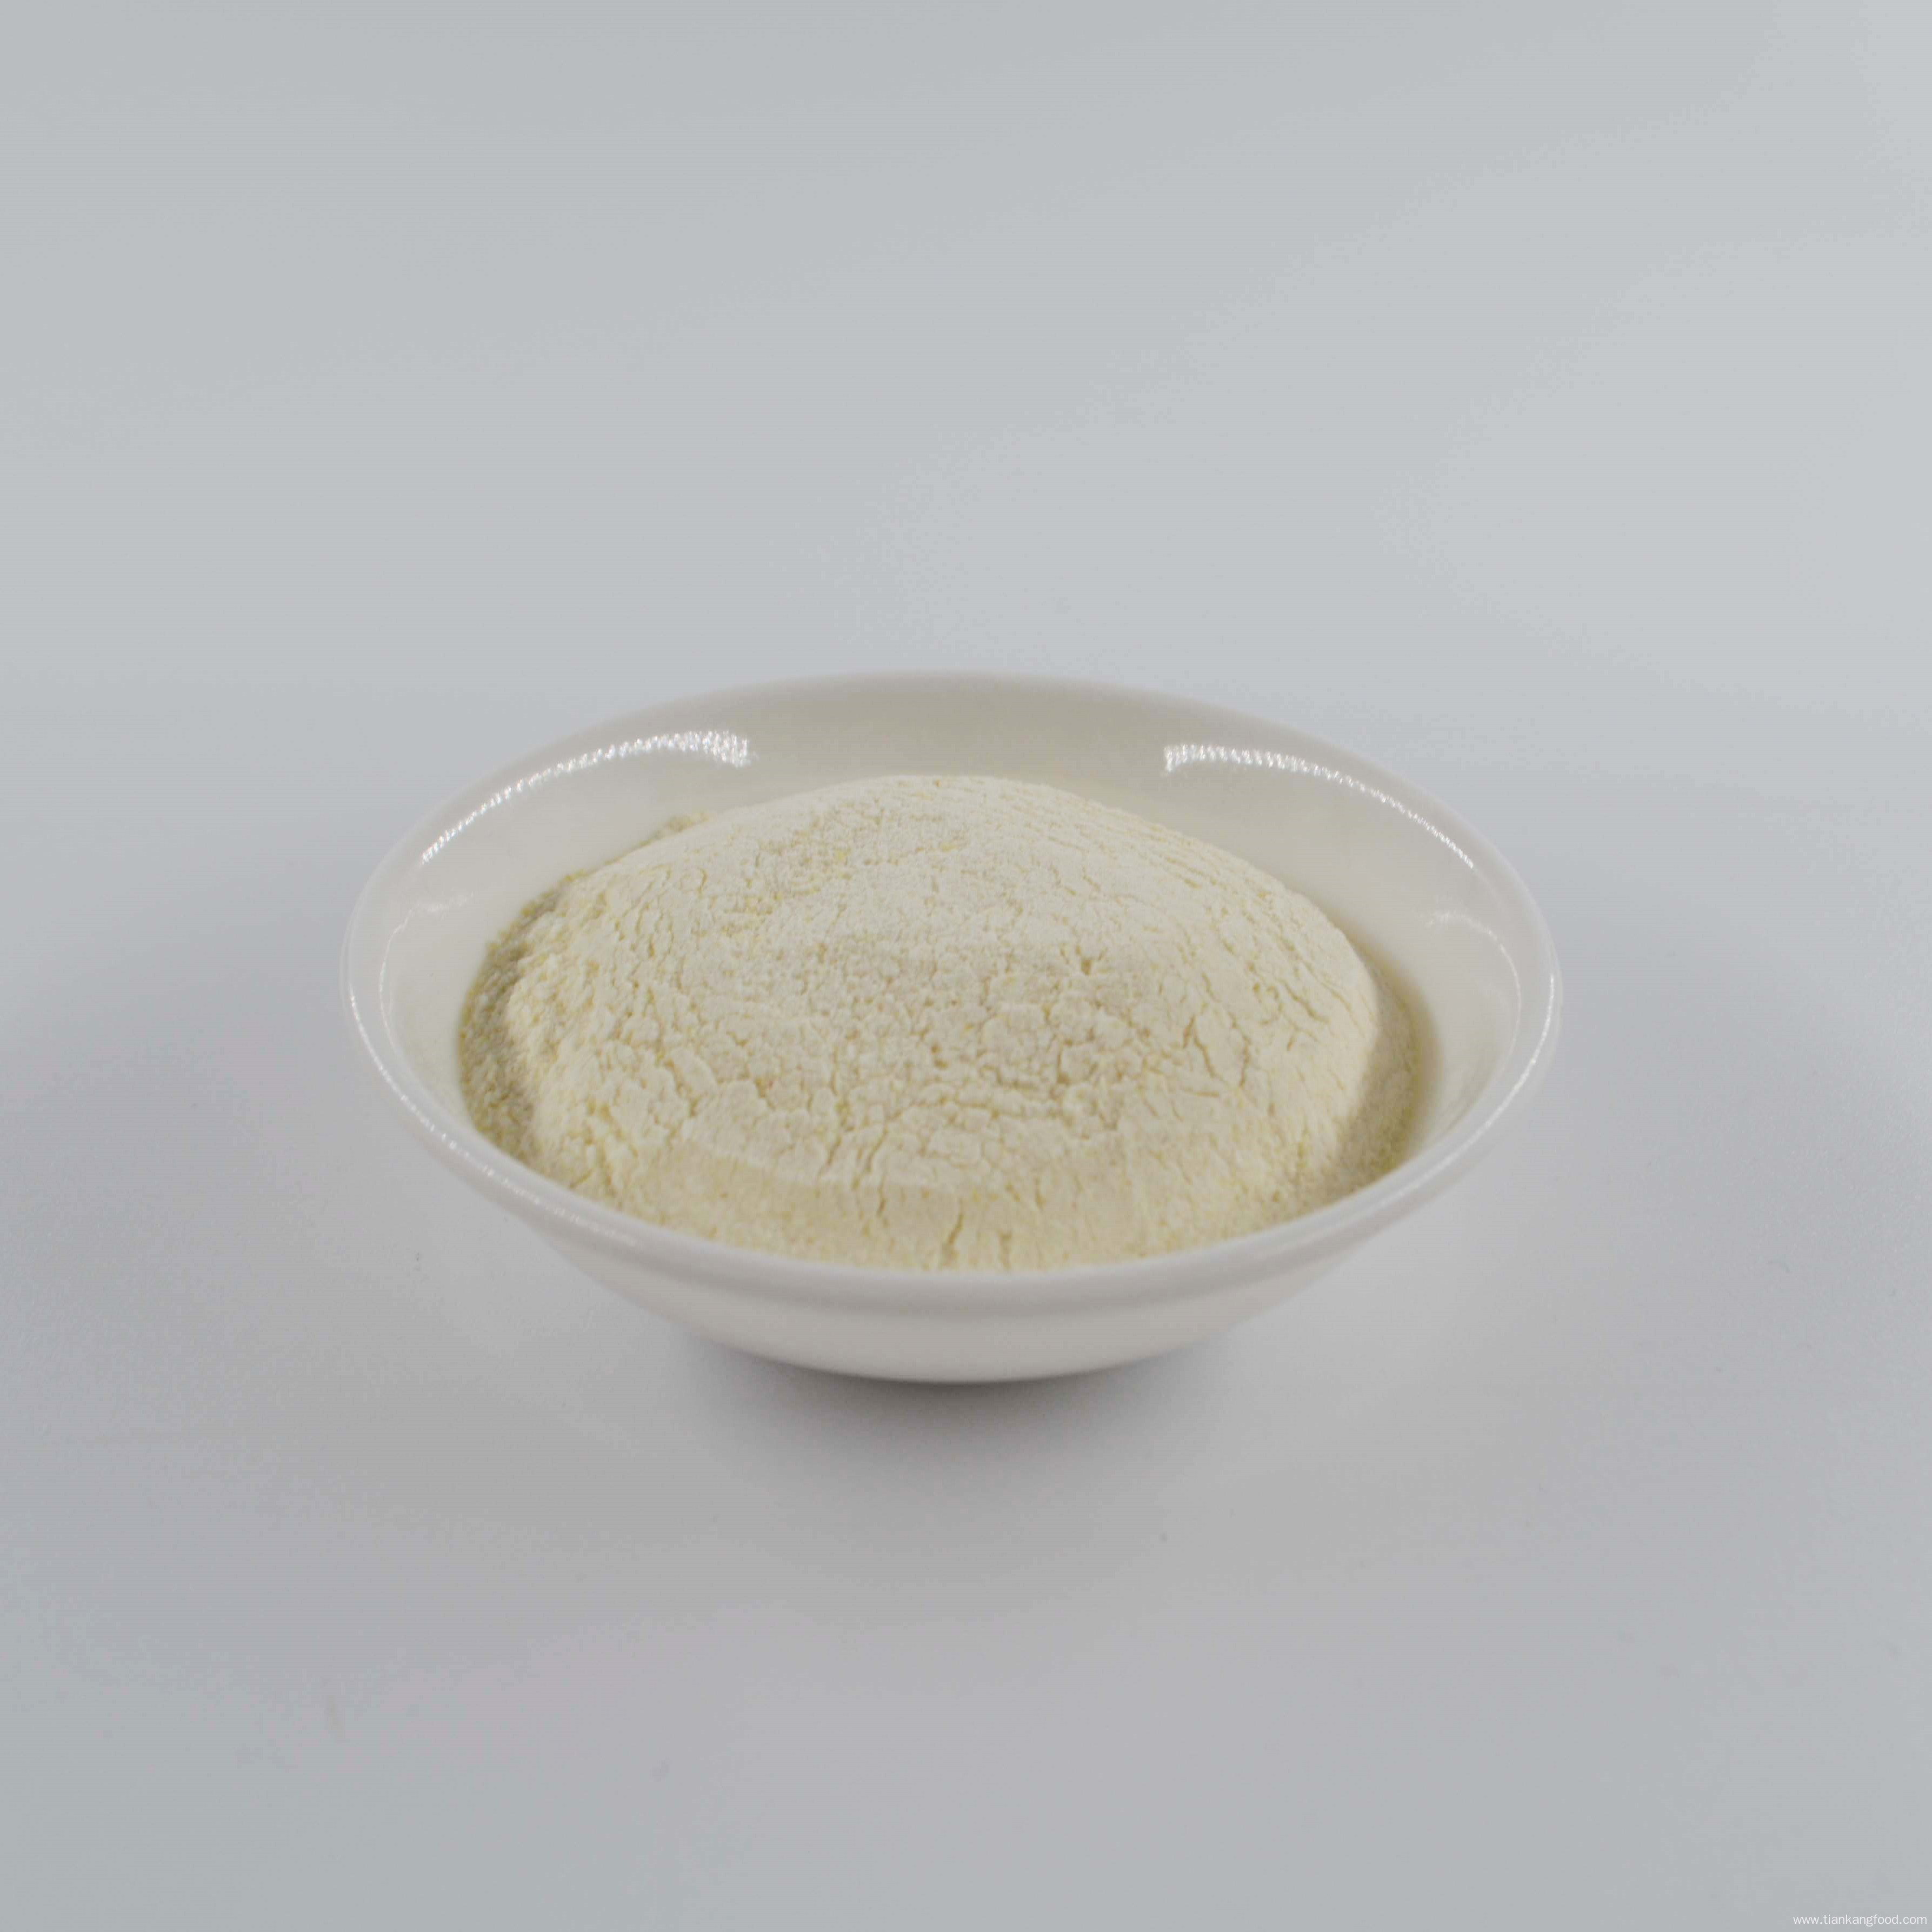 High purity garlic powder